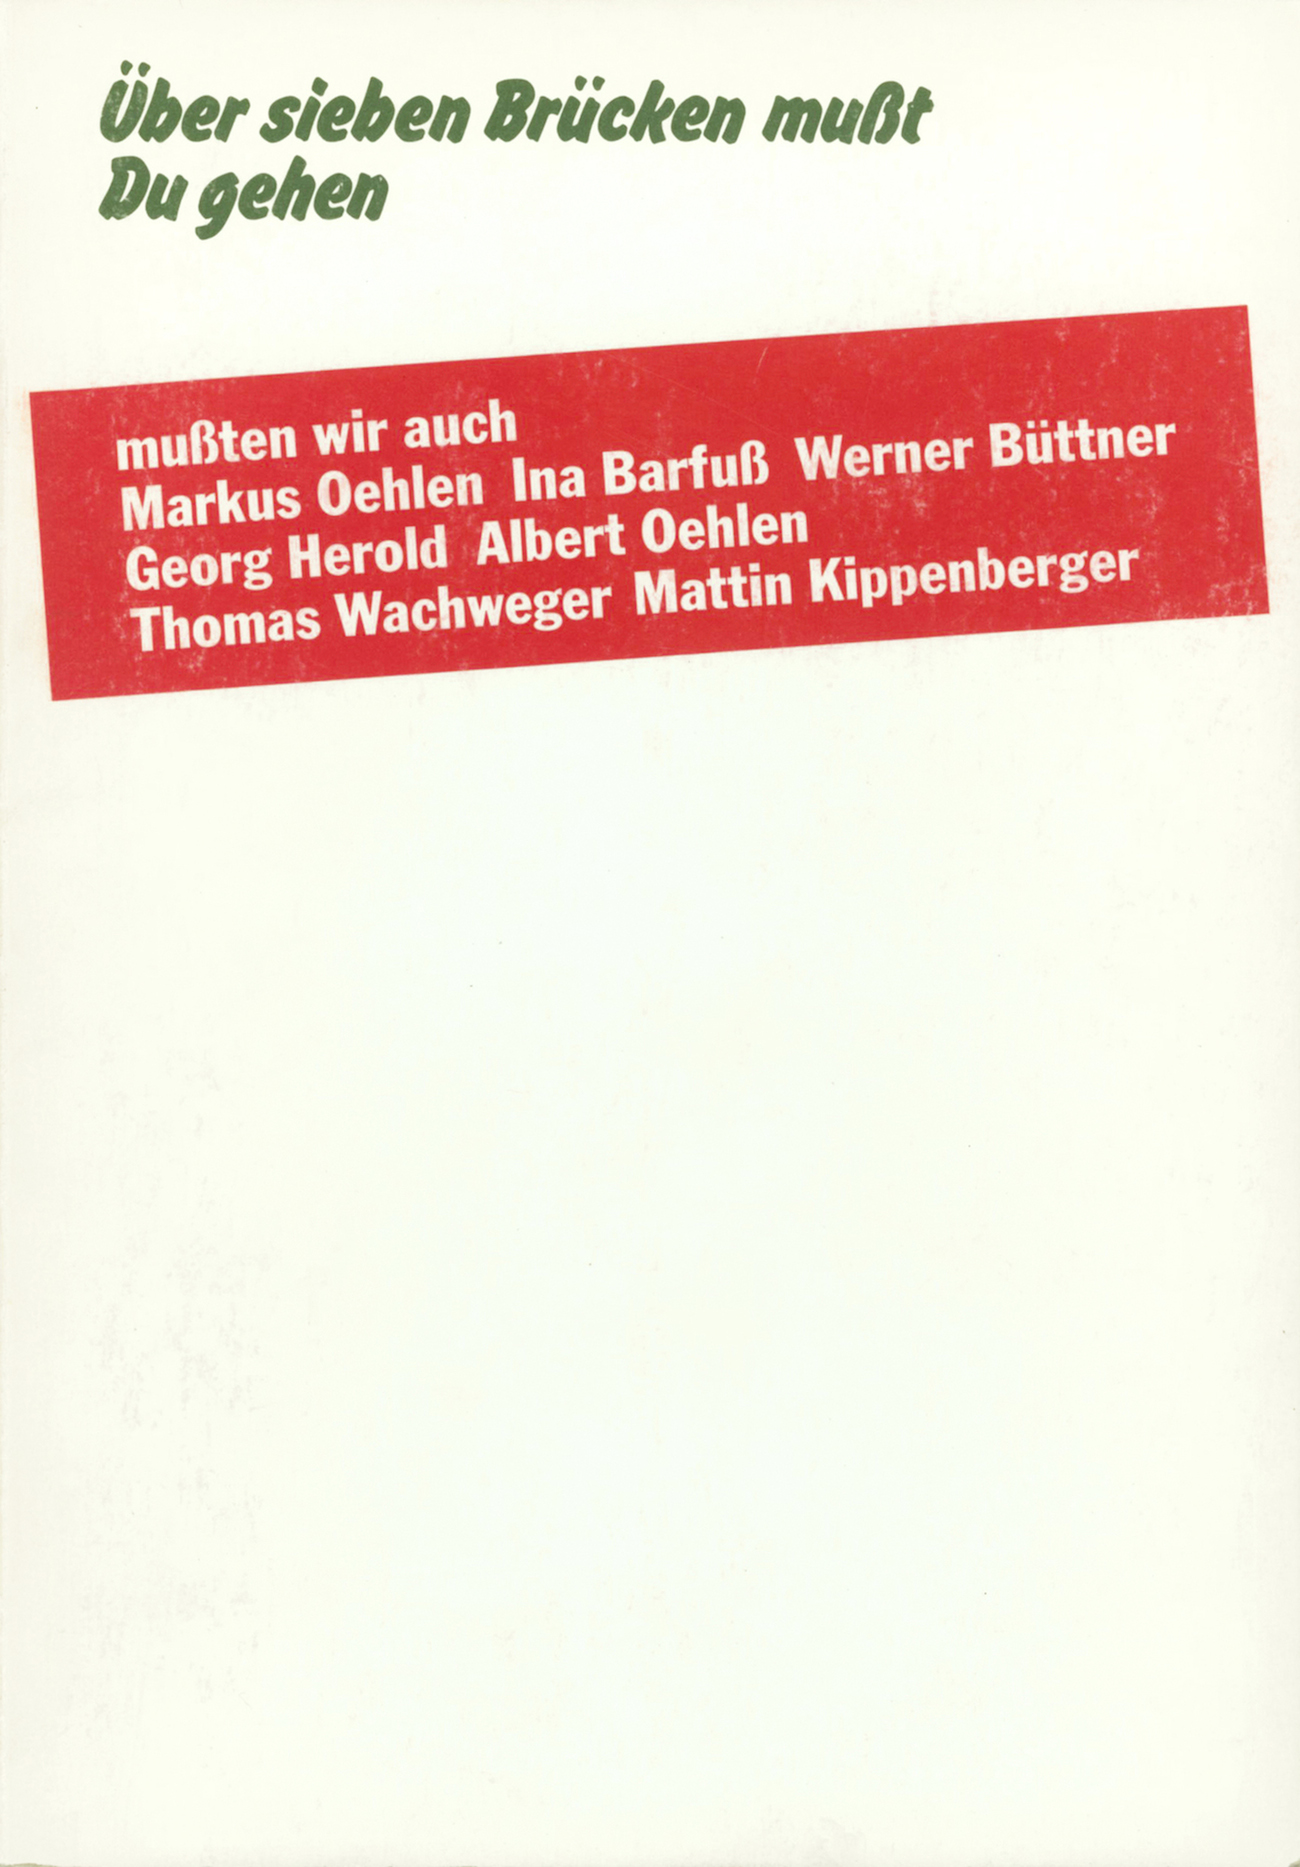 Das vorliegende Blatt stammt Max Pechstein, Sein malerisches Werk, Brücke-Museum, Berlin.